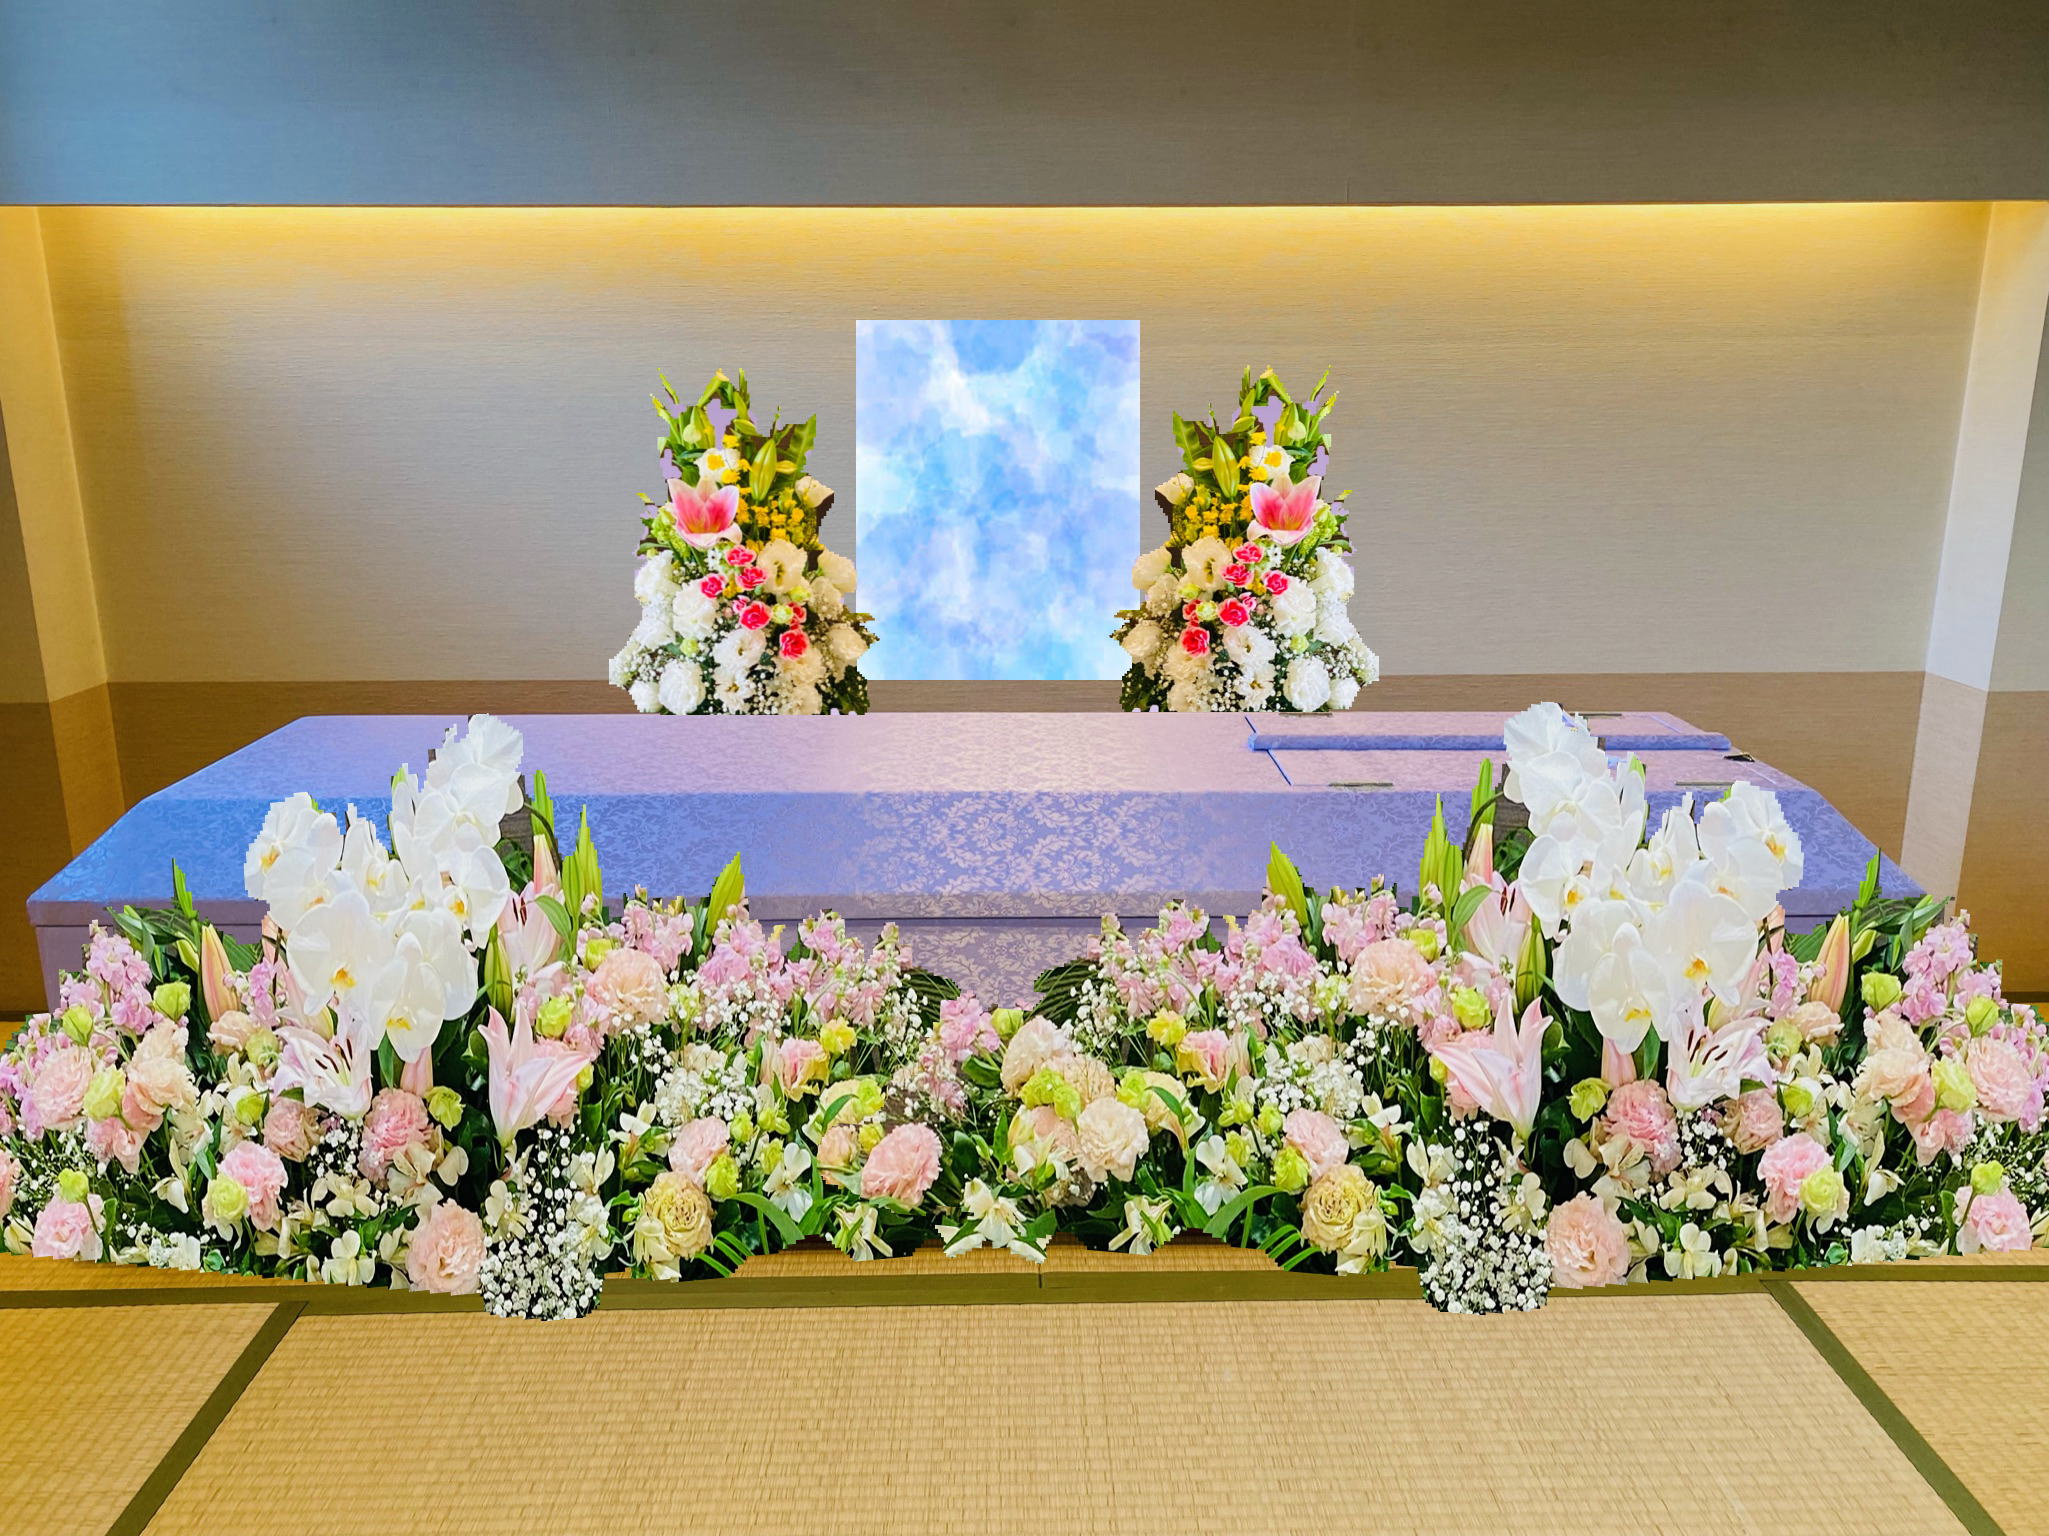 綺麗な洋花祭壇でエレガントな自宅葬をご案内致します